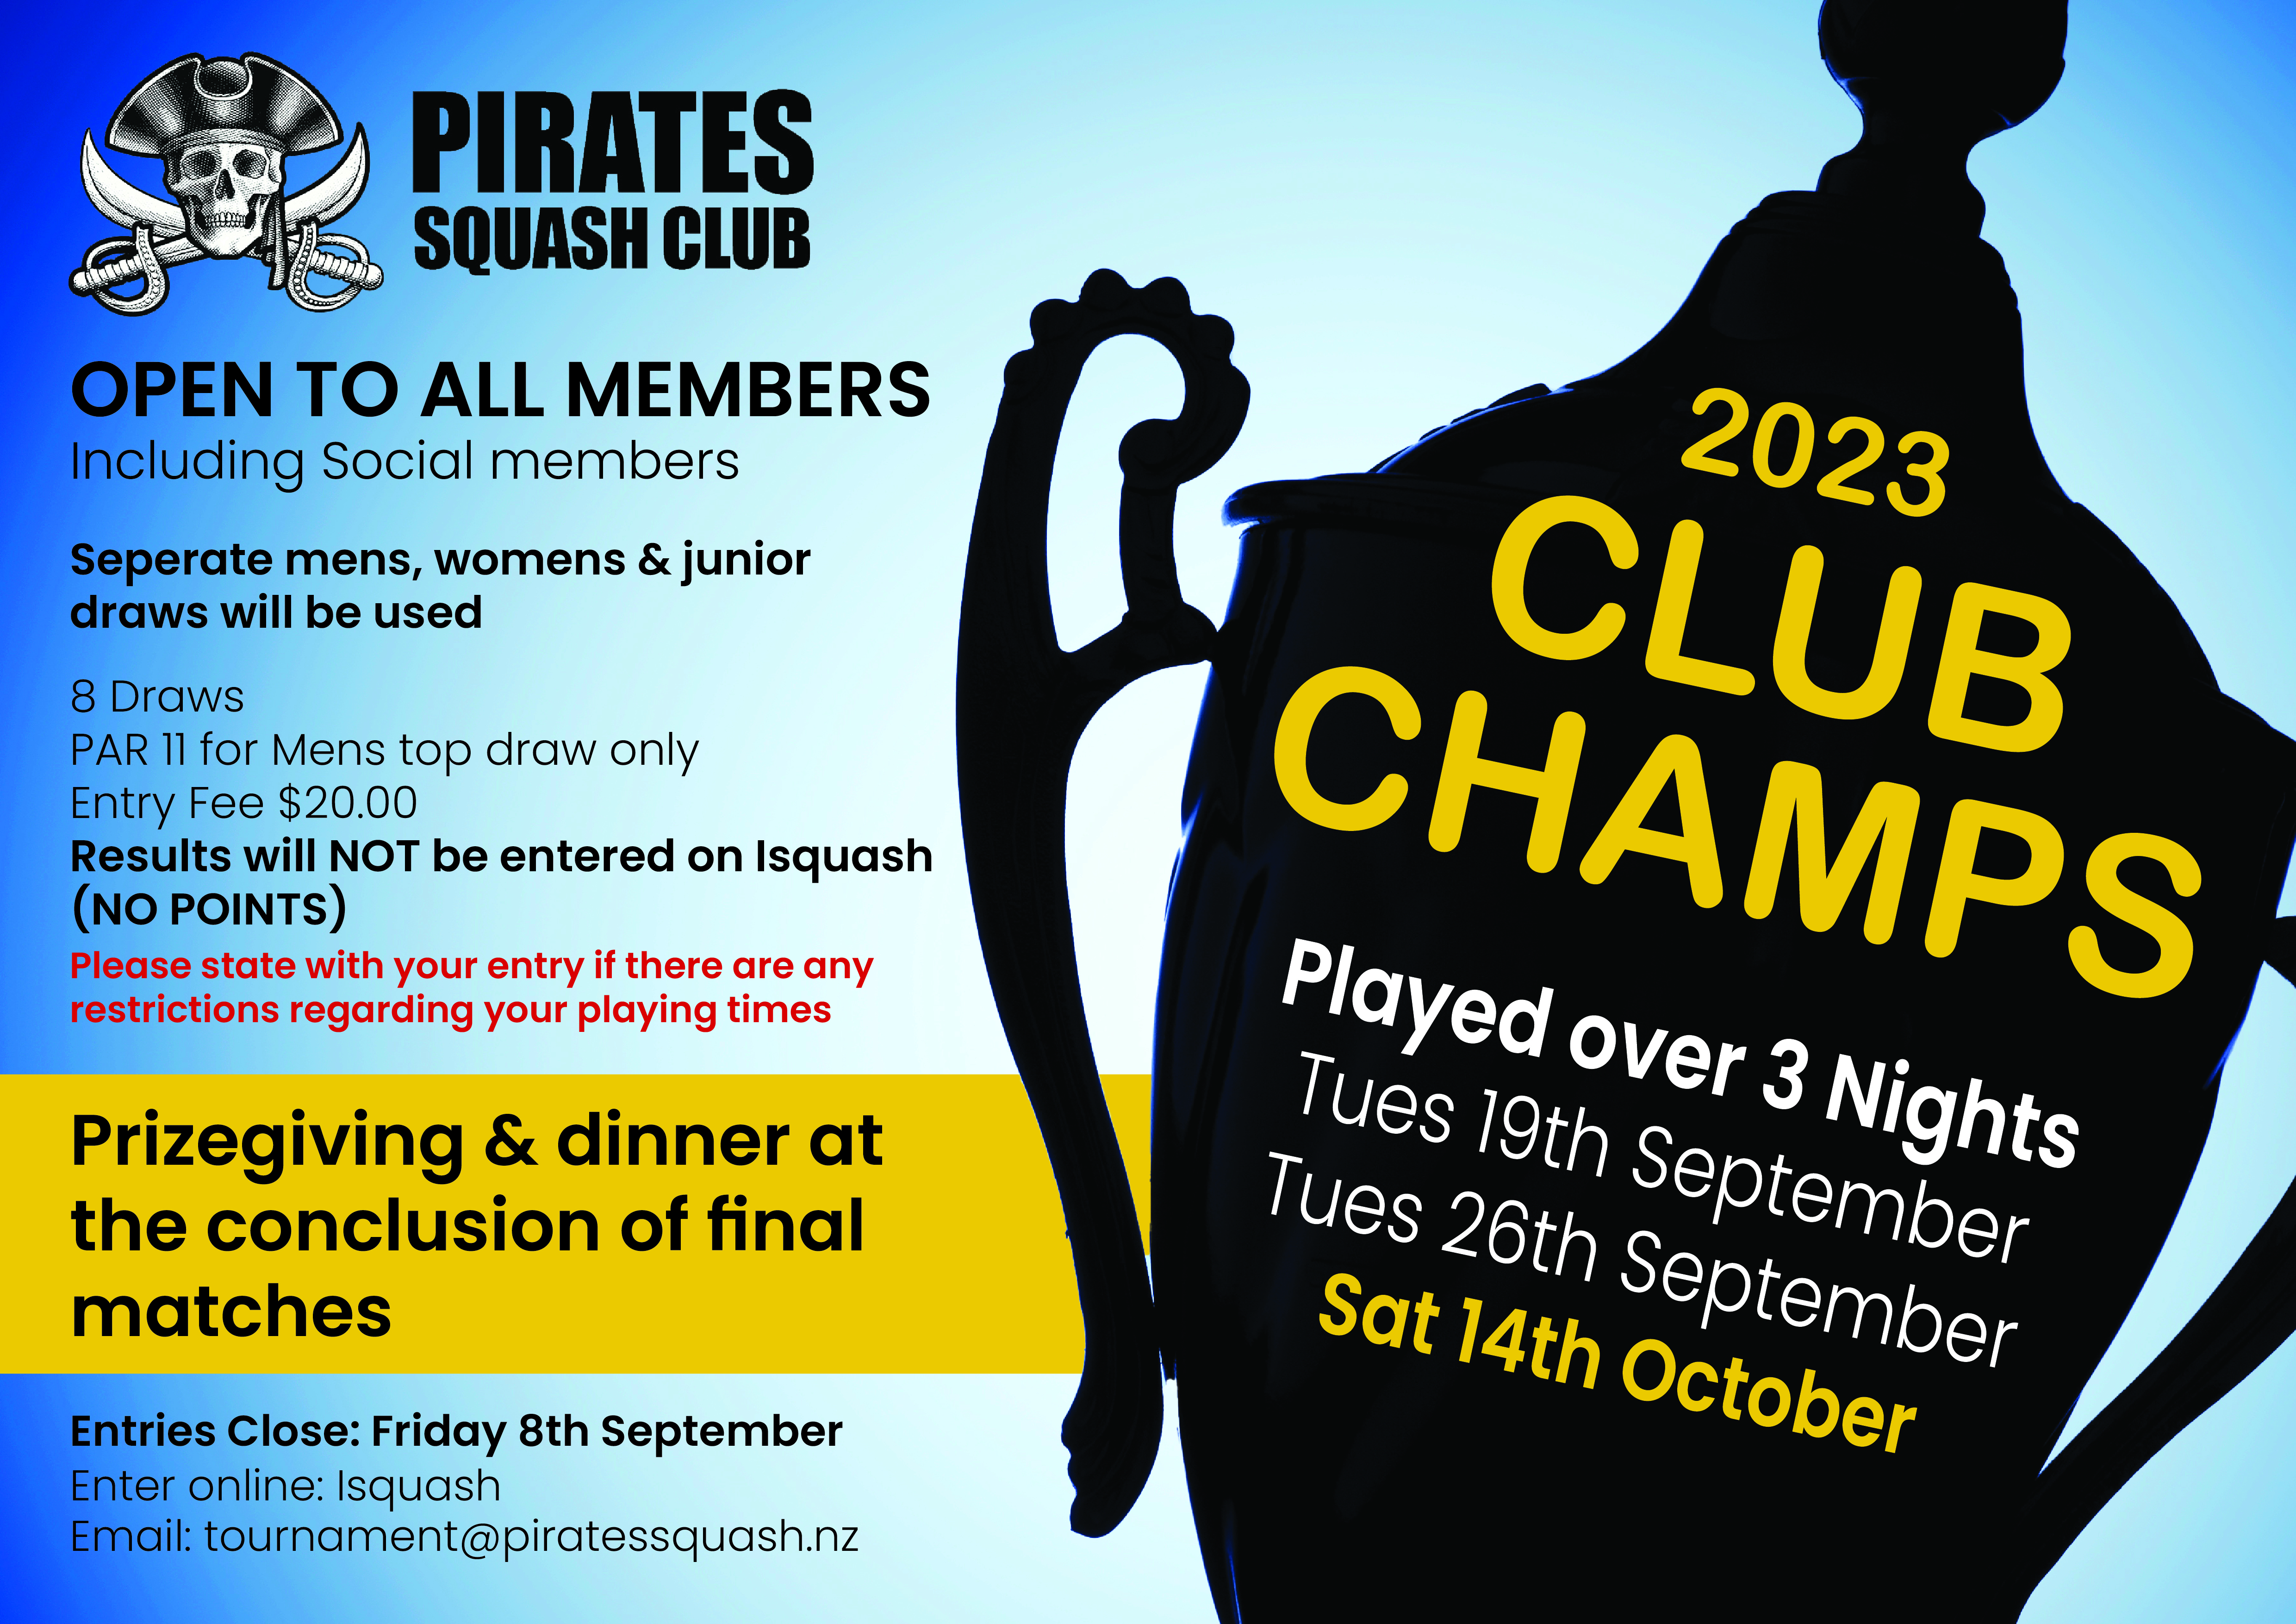 Pirates Squash Club - Club Champs 2023